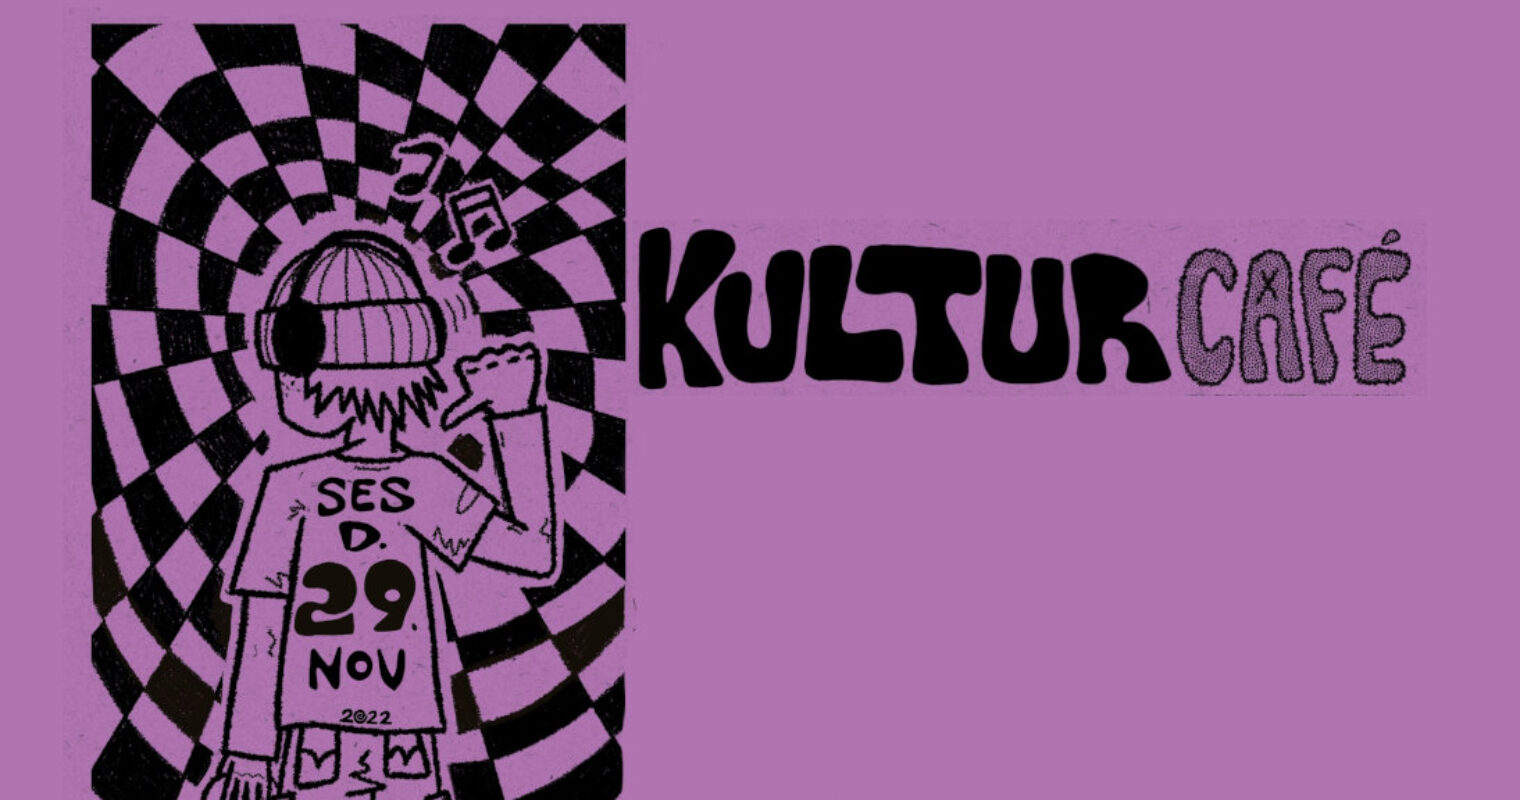 Kom til Kulturcafé 29. november